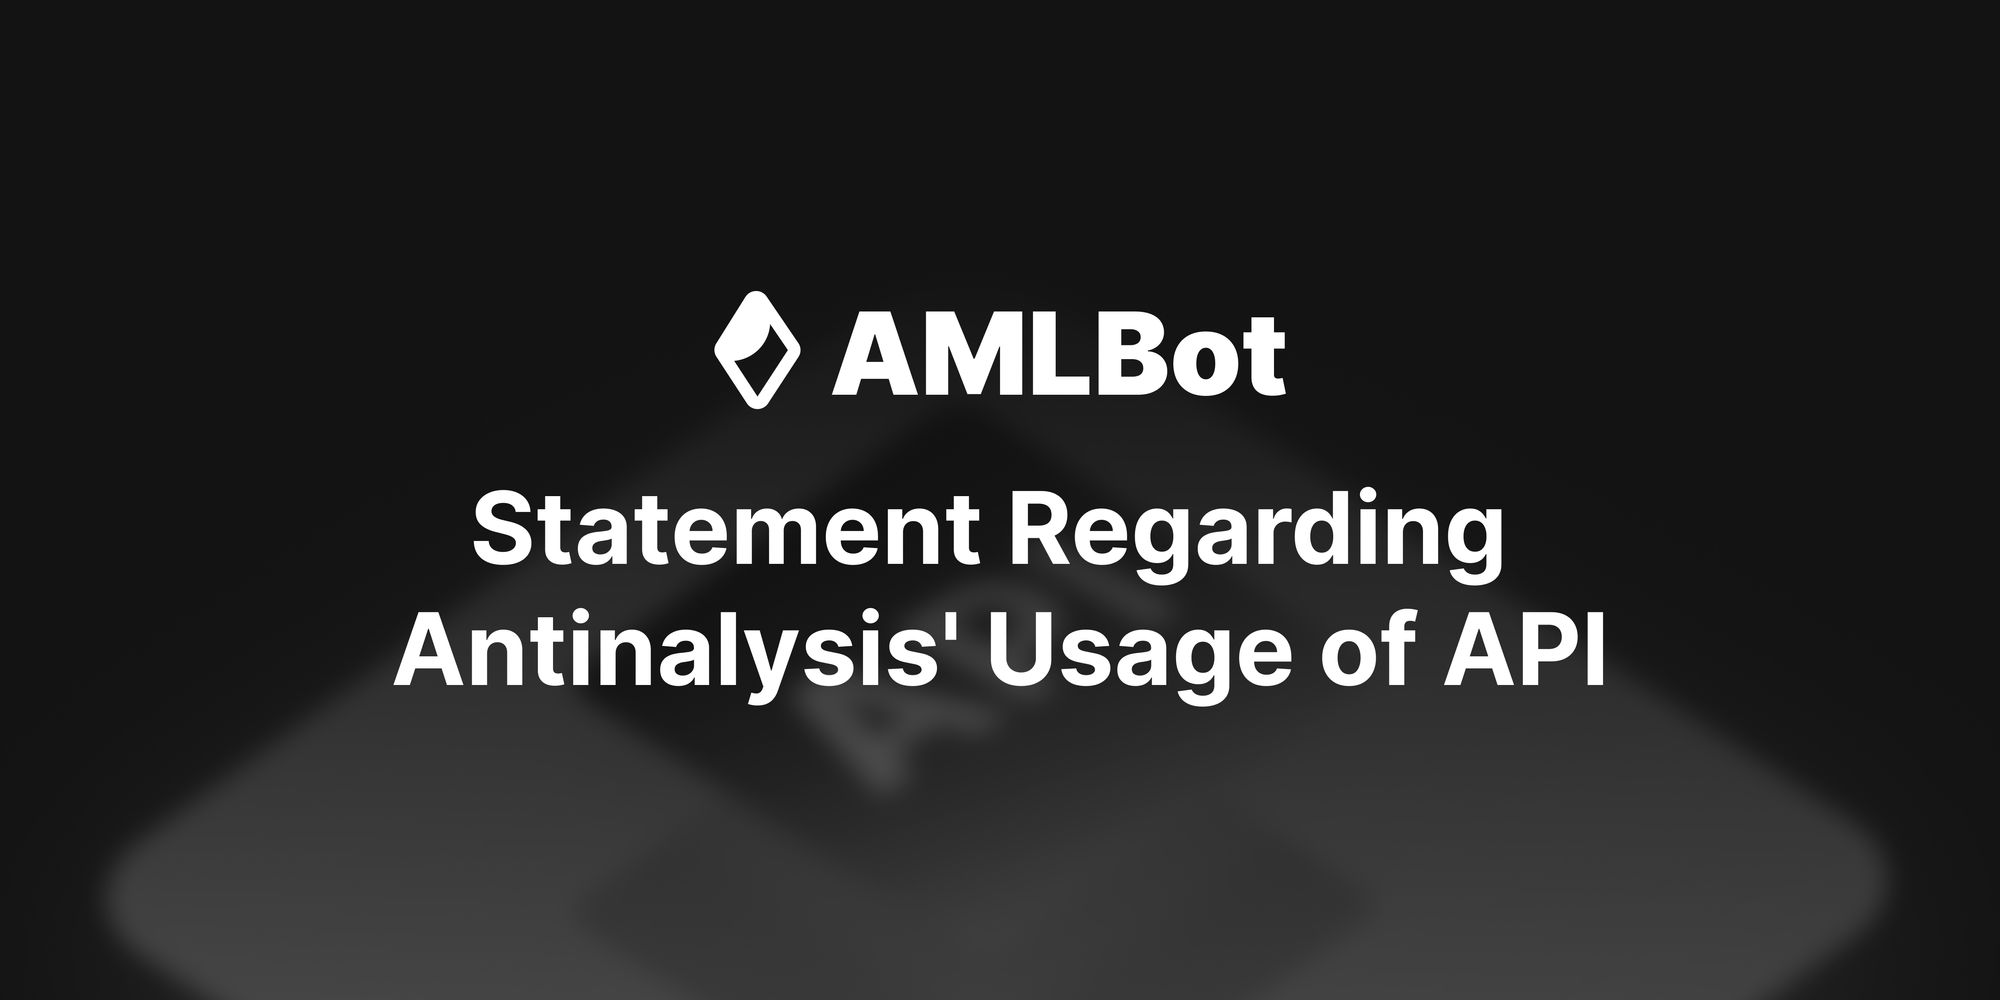 AMLBot's Statement Regarding Antinalysis' Usage of API